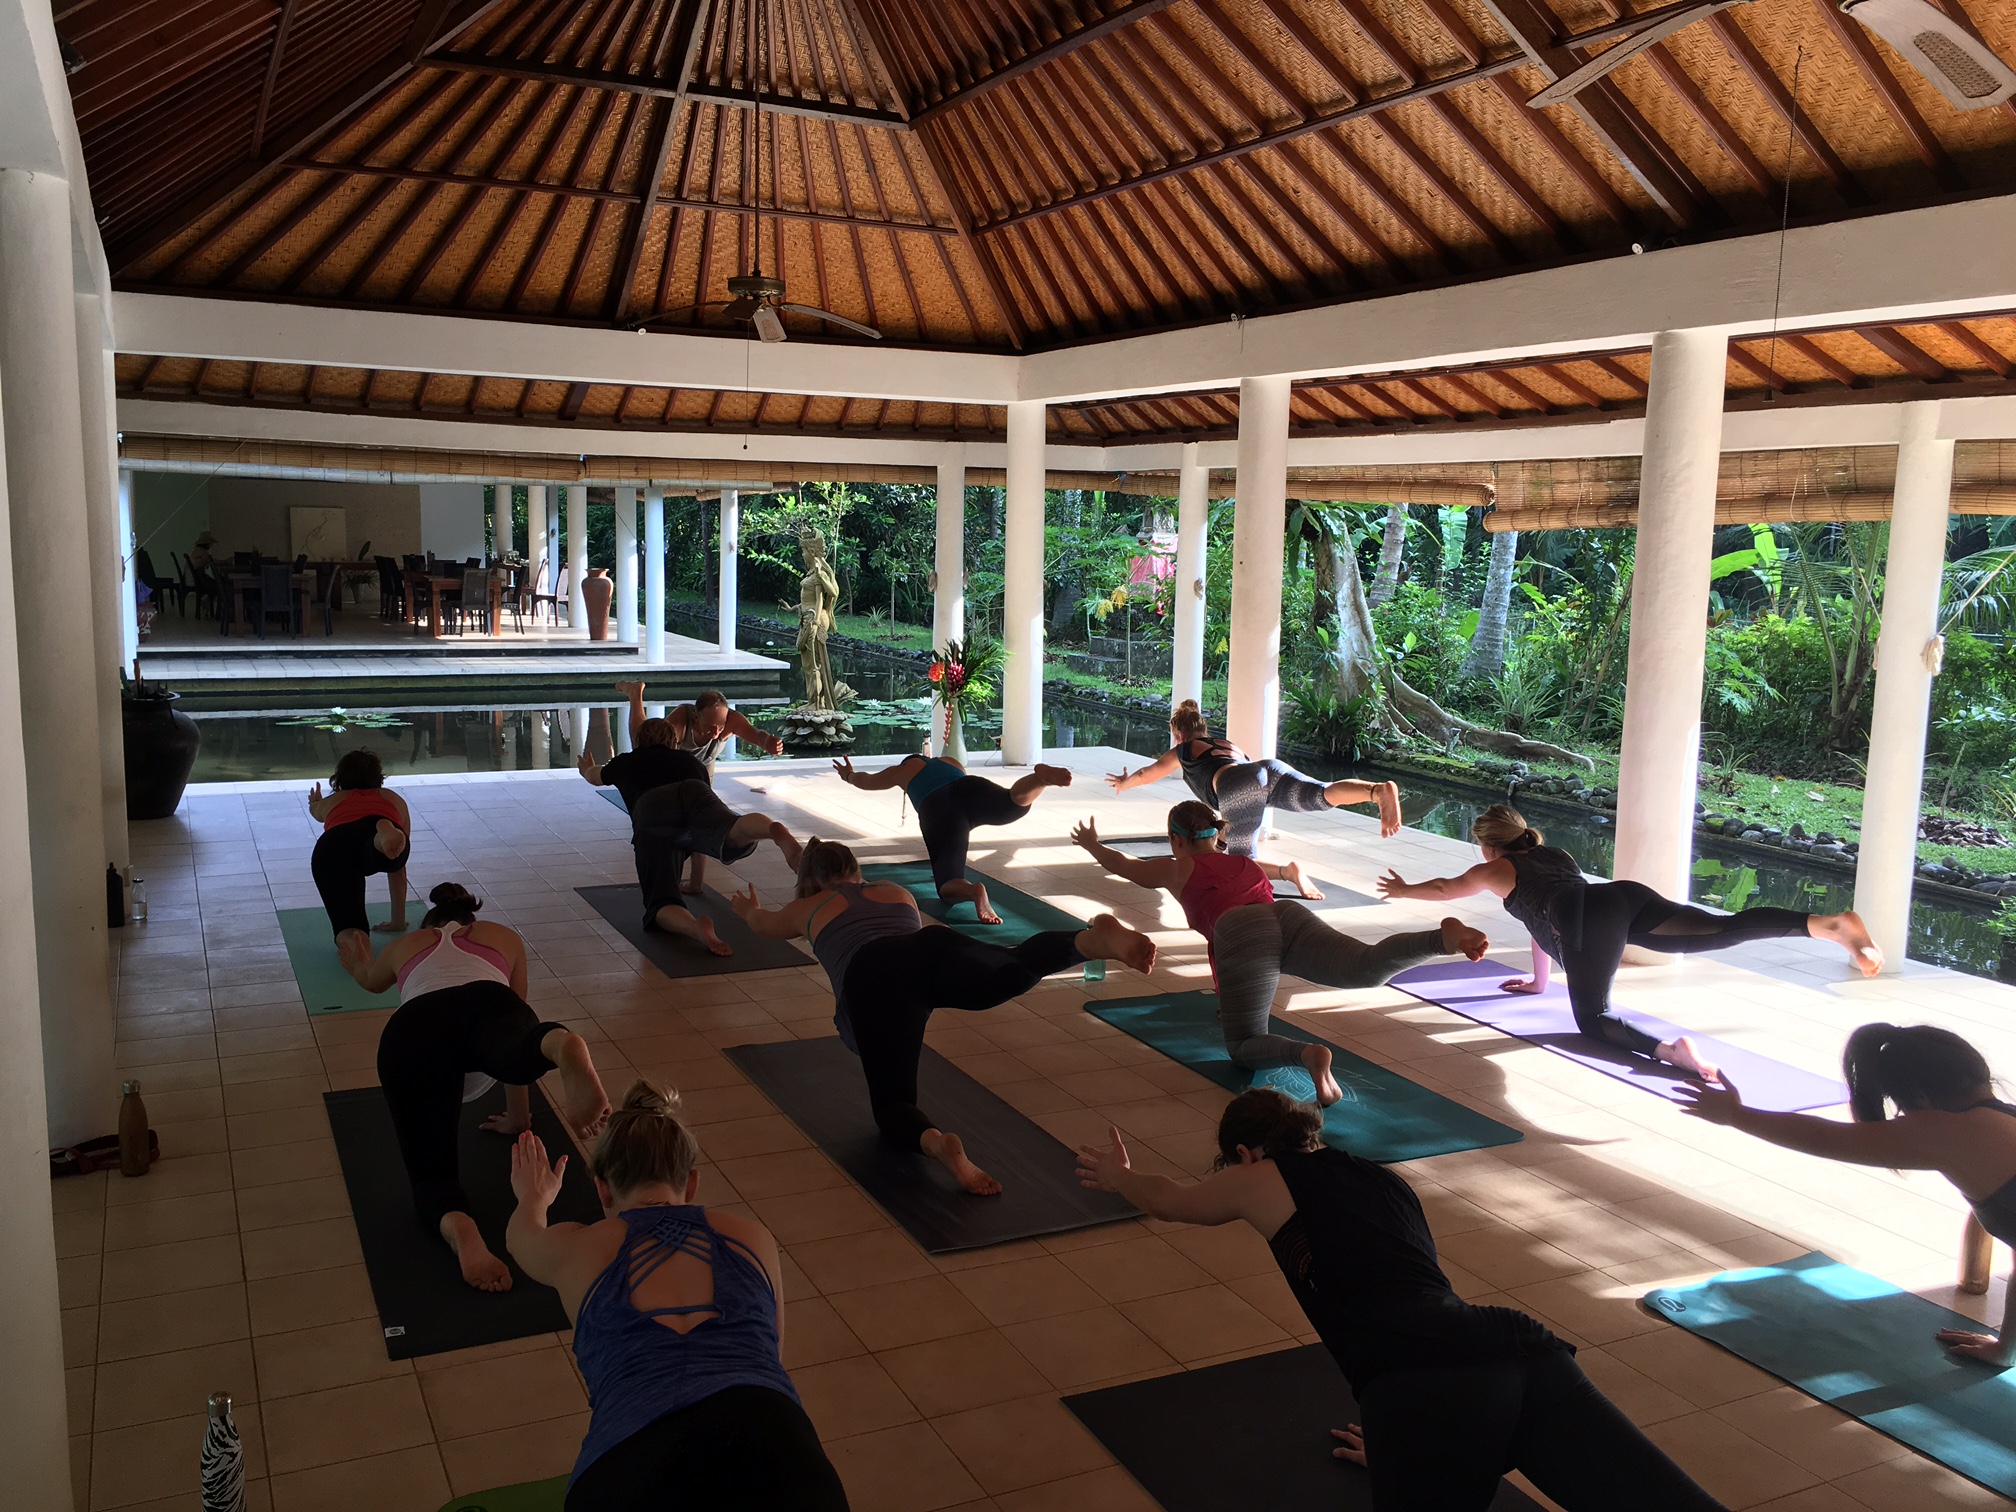 Teaching yoga Bali Nov 2016